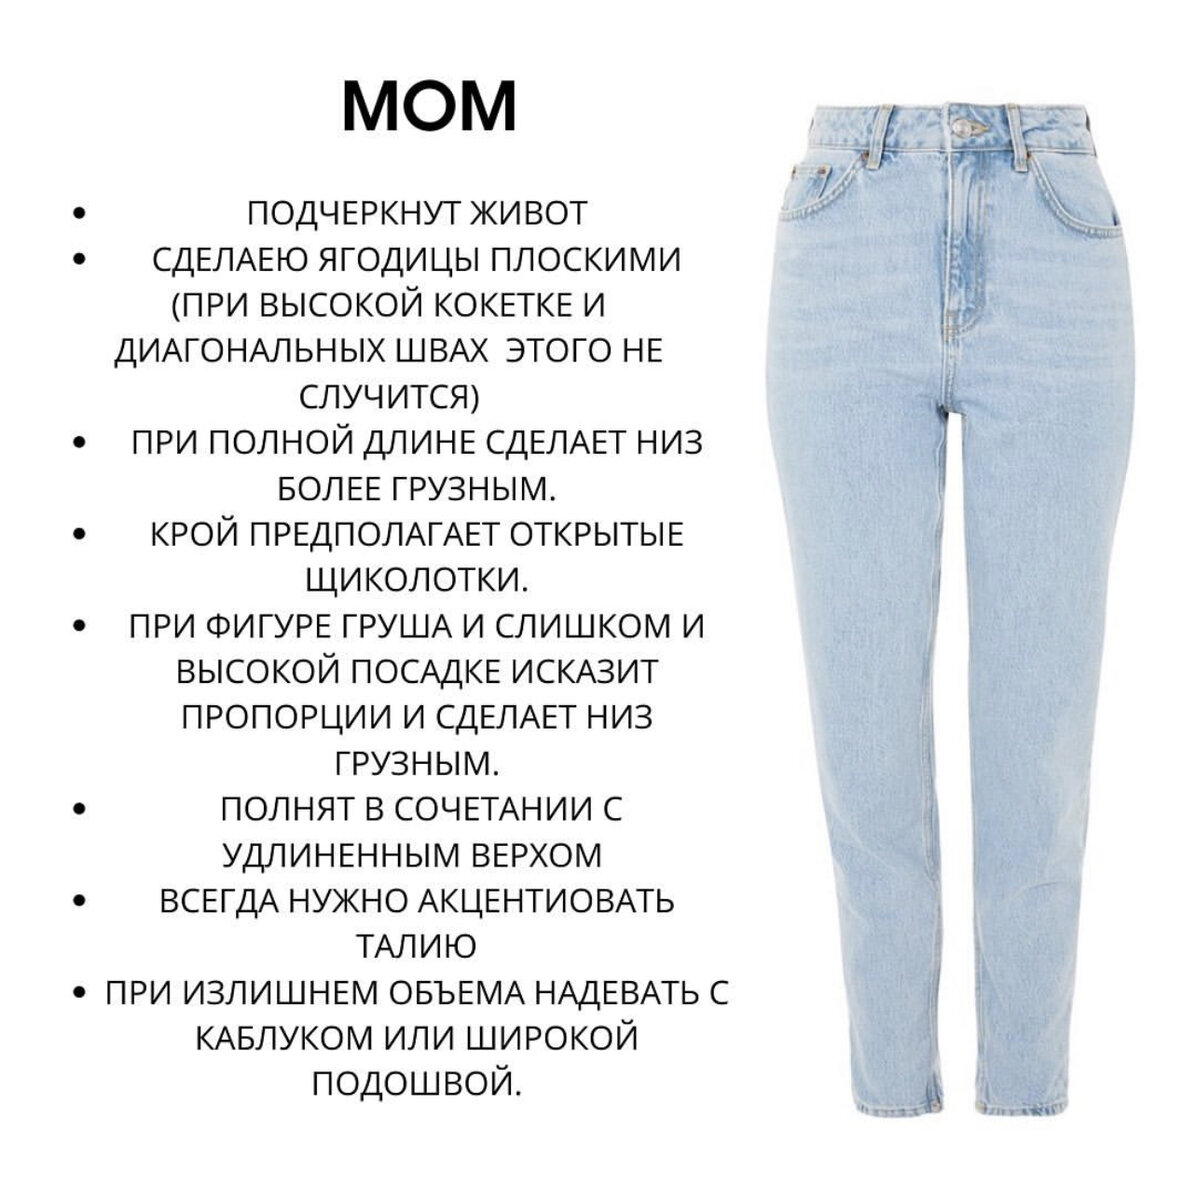 Описание джинс мом